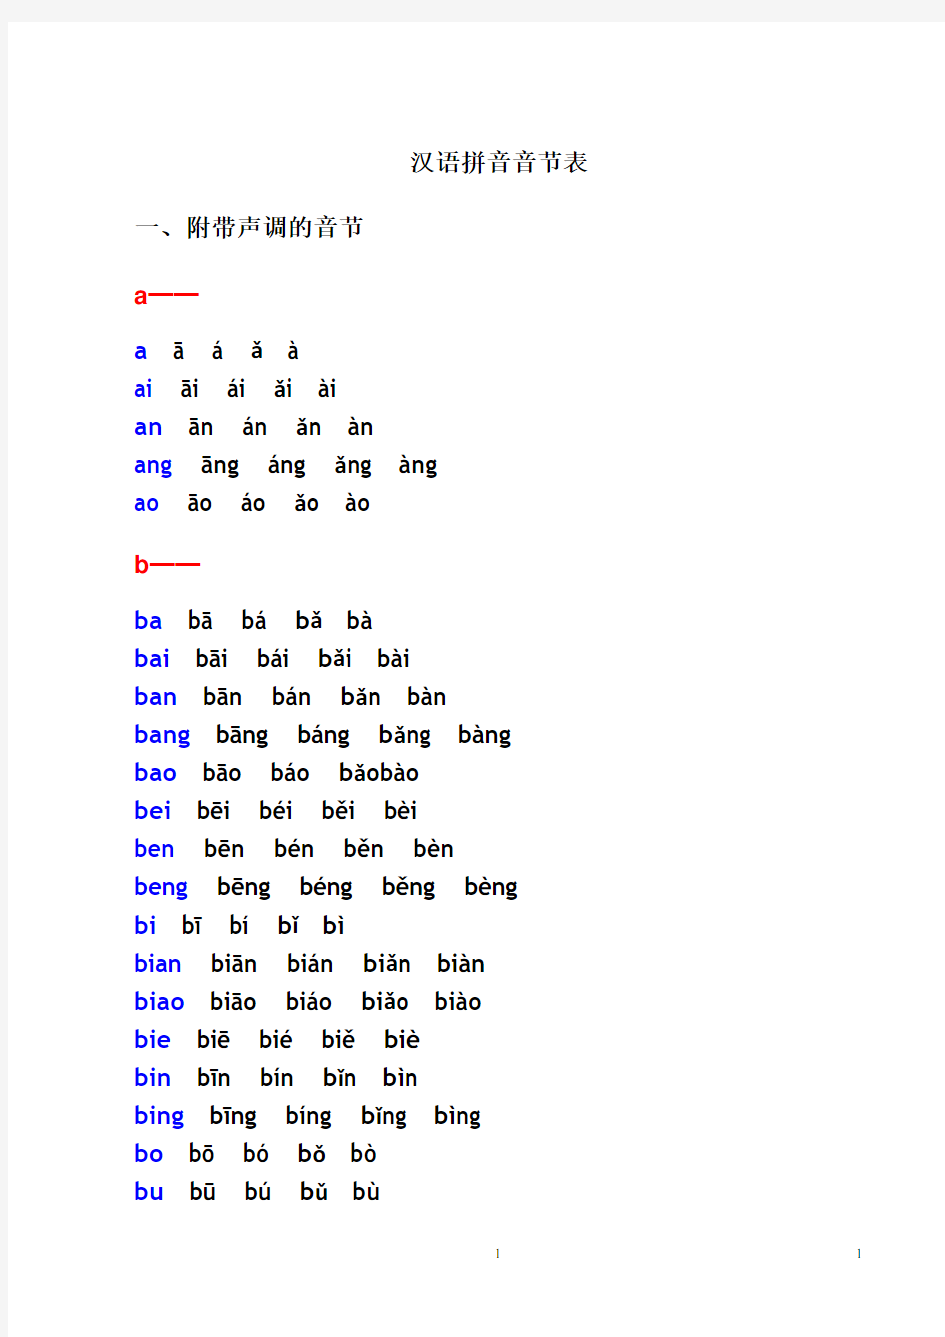 汉语拼音音节表(带声调音节)(2020年10月整理).pdf